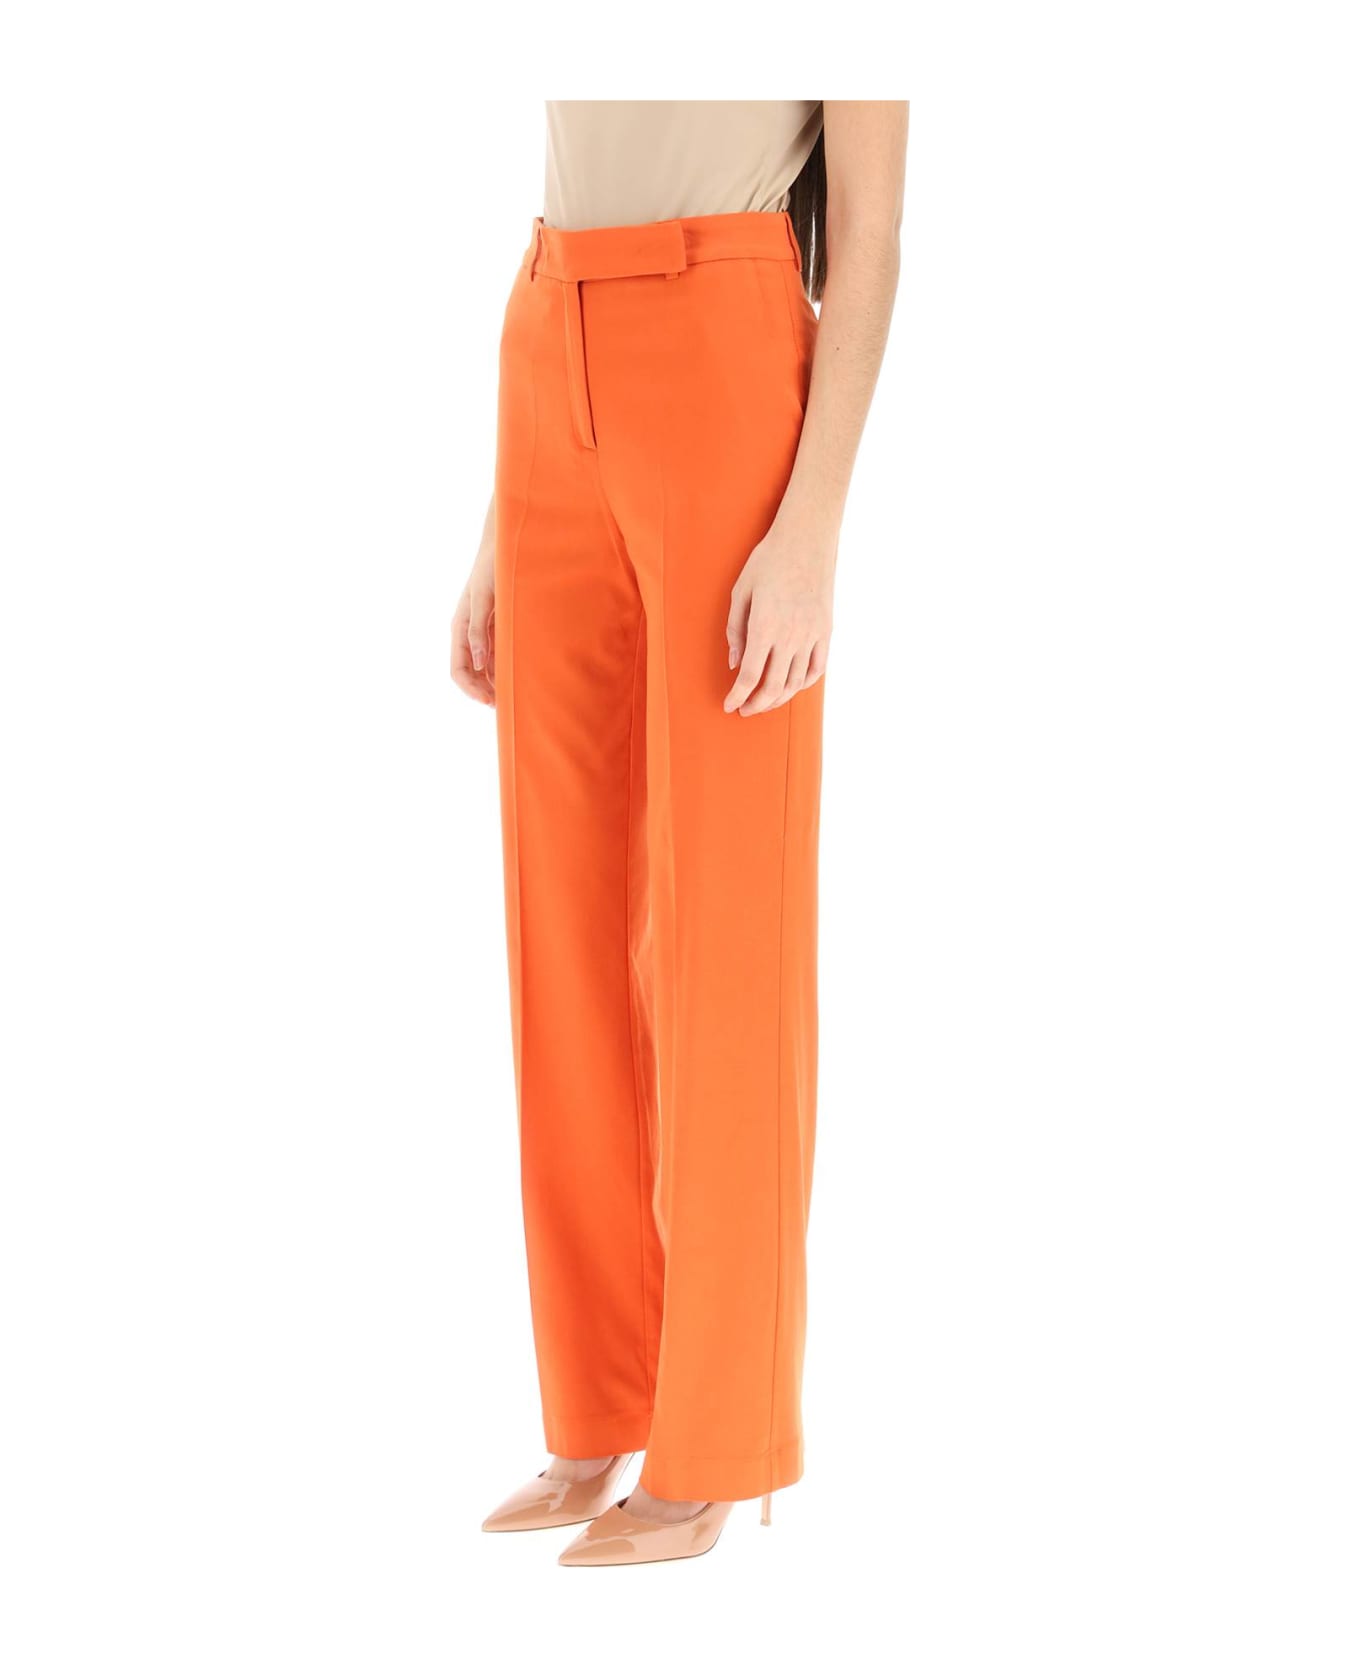 Hebe Studio 'lover' Canvas Trousers - ORANGE (Orange)